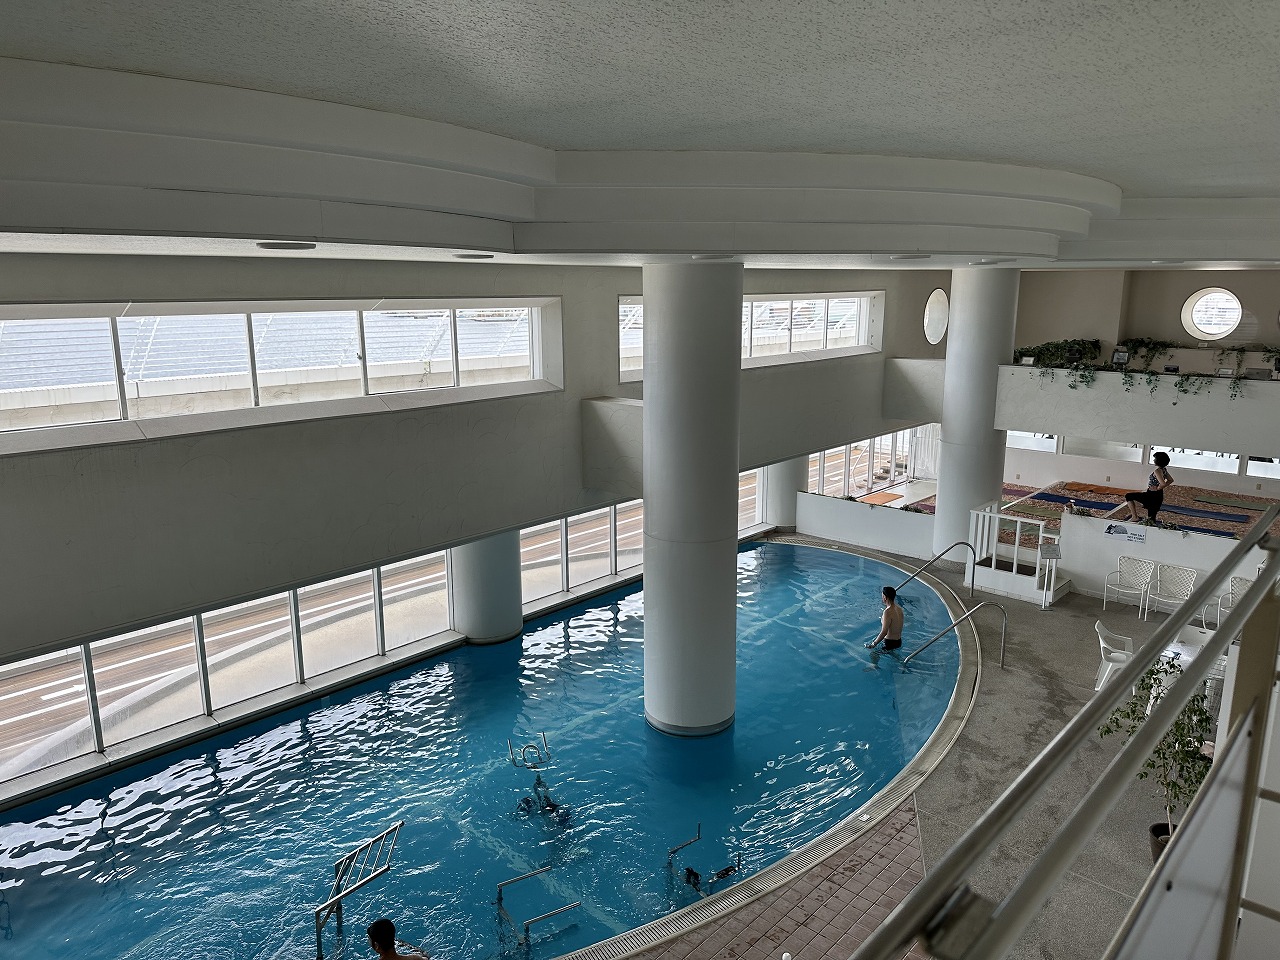 神戸メリケンパークオリエンタルホテル内にある、スポーツクラブ「VIVO」